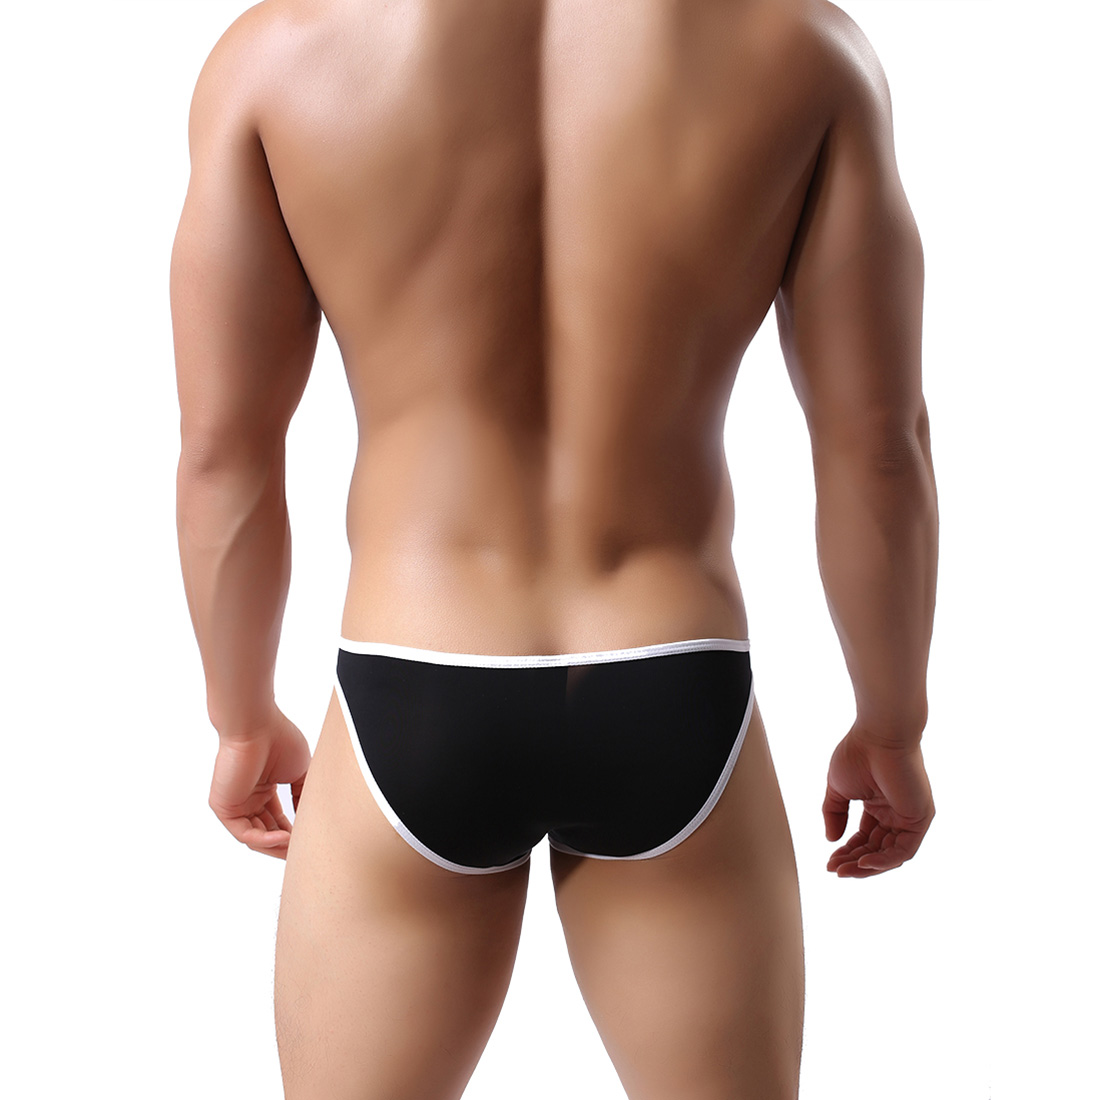 Men's Lingerie Underwear Sexy Briefs Triangle Pants Shorts WH46 Black L